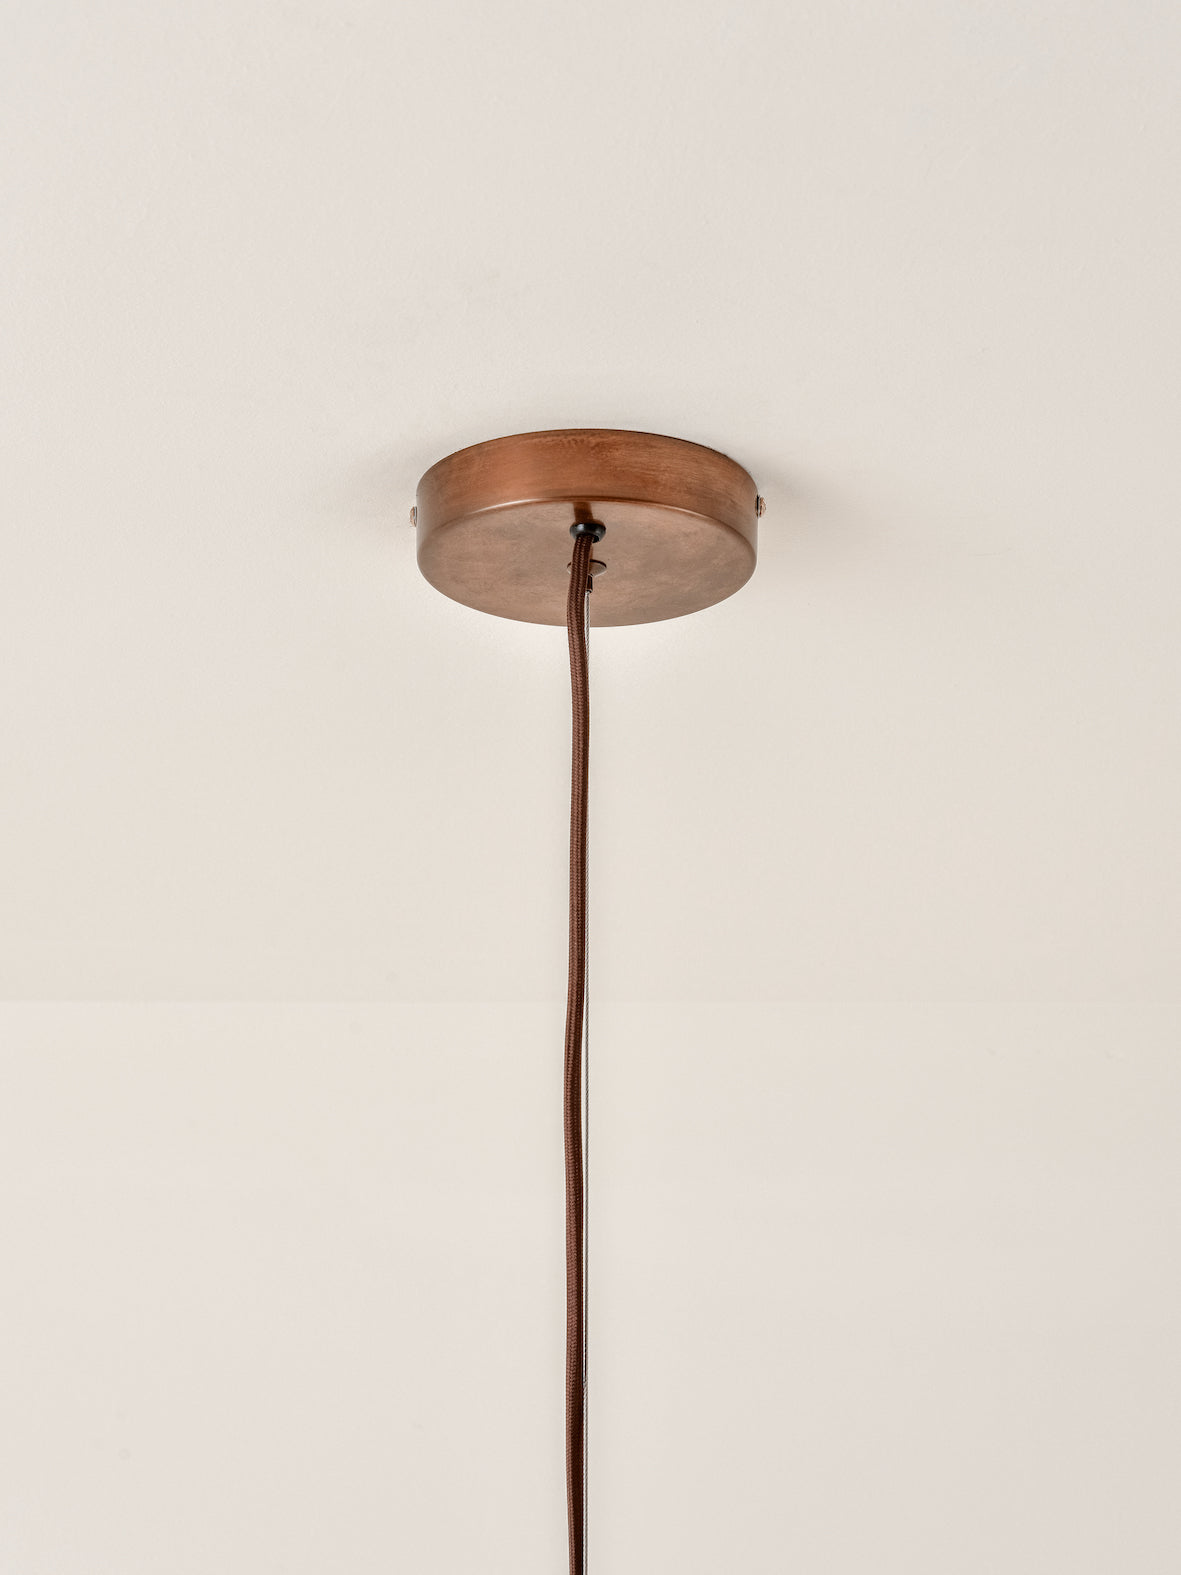 Bardi - 1 light oversized scalloped rattan pendant | Ceiling Light | Lights & Lamps | UK | Modern Affordable Designer Lighting